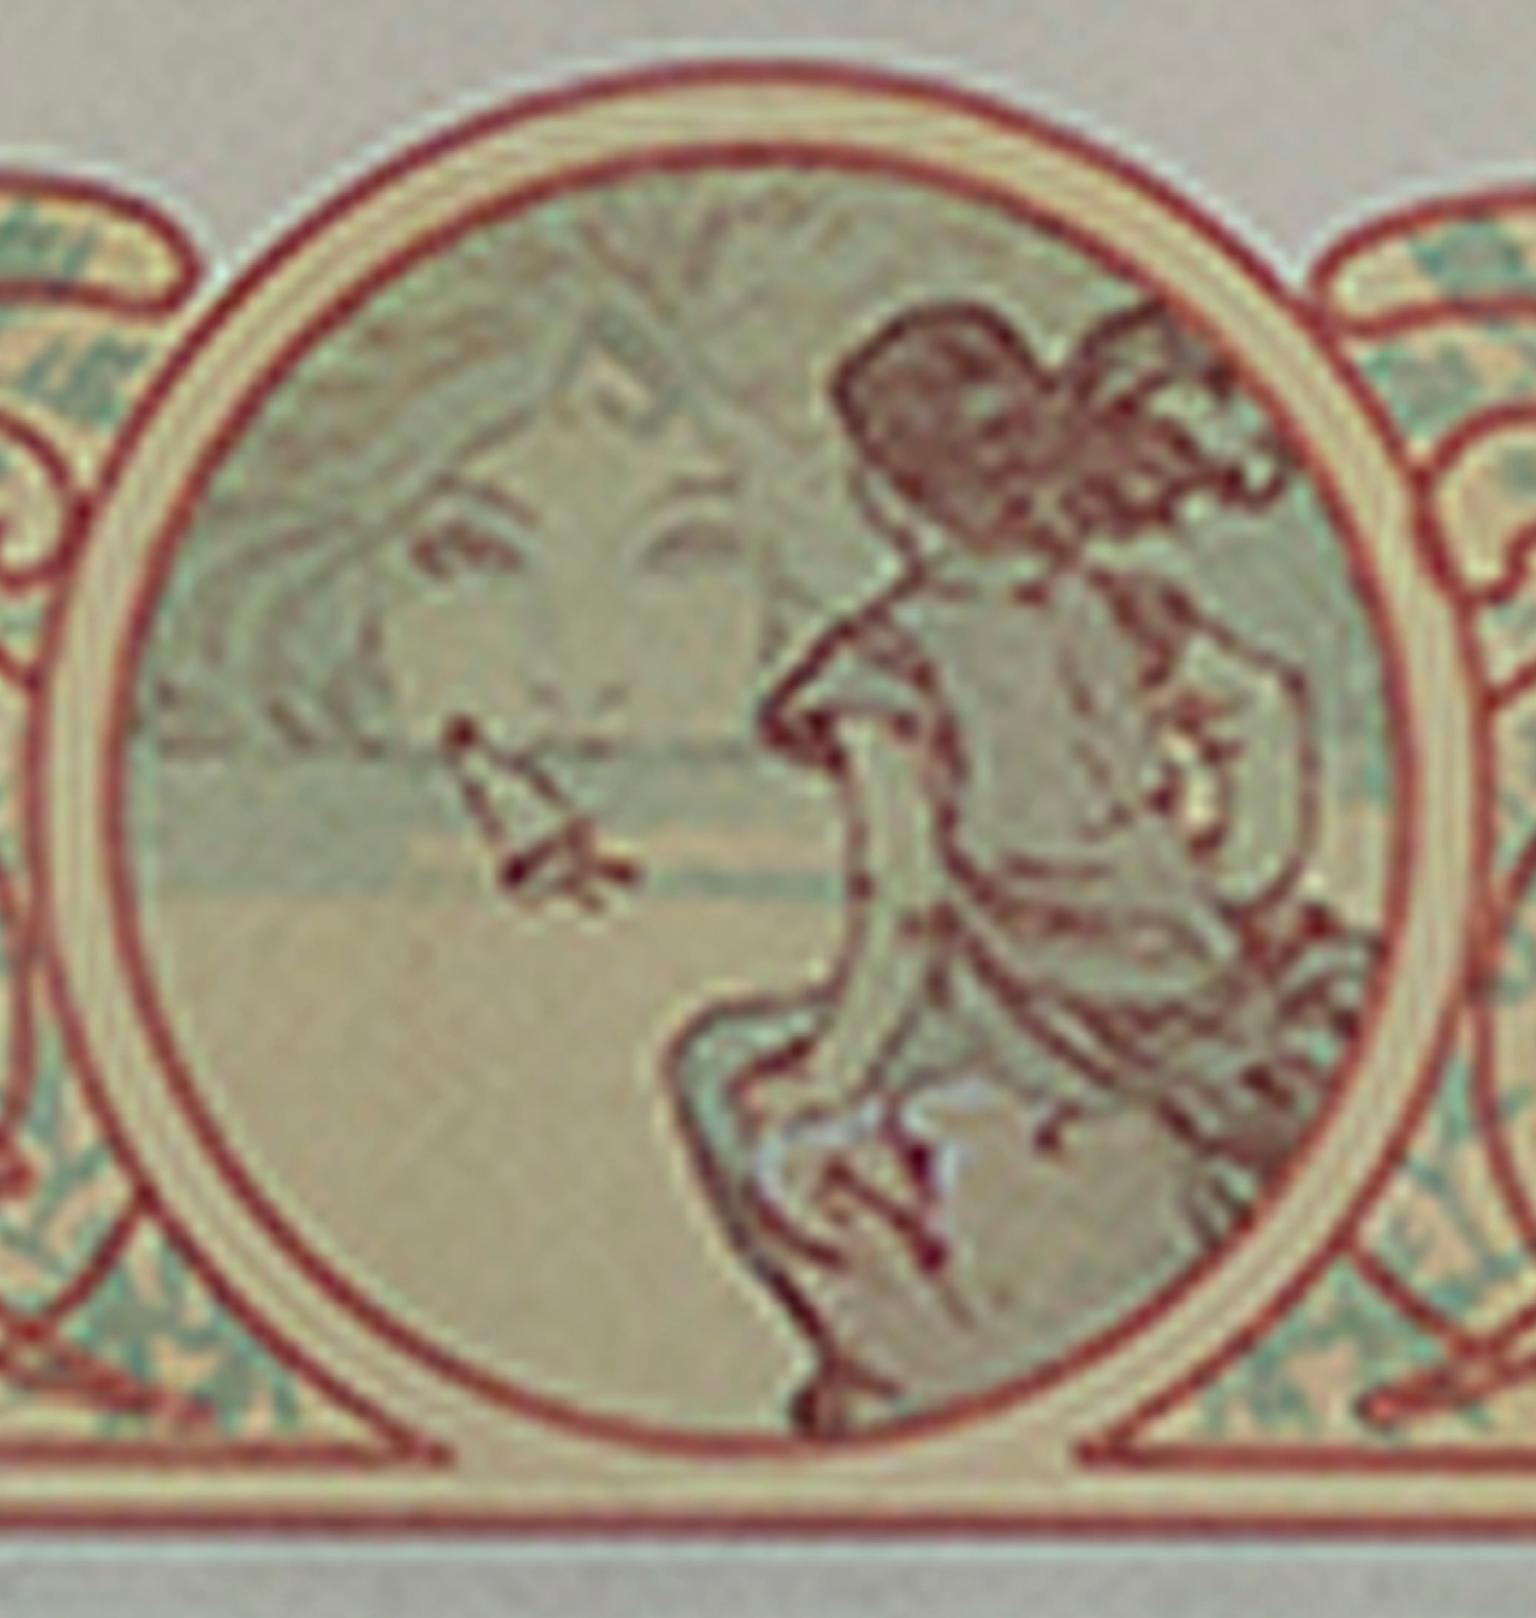 Farblithographie des späten 19. Jahrhunderts, Art nouveau-Bücherregal verso mit Verzierungen – Print von Alphonse Mucha